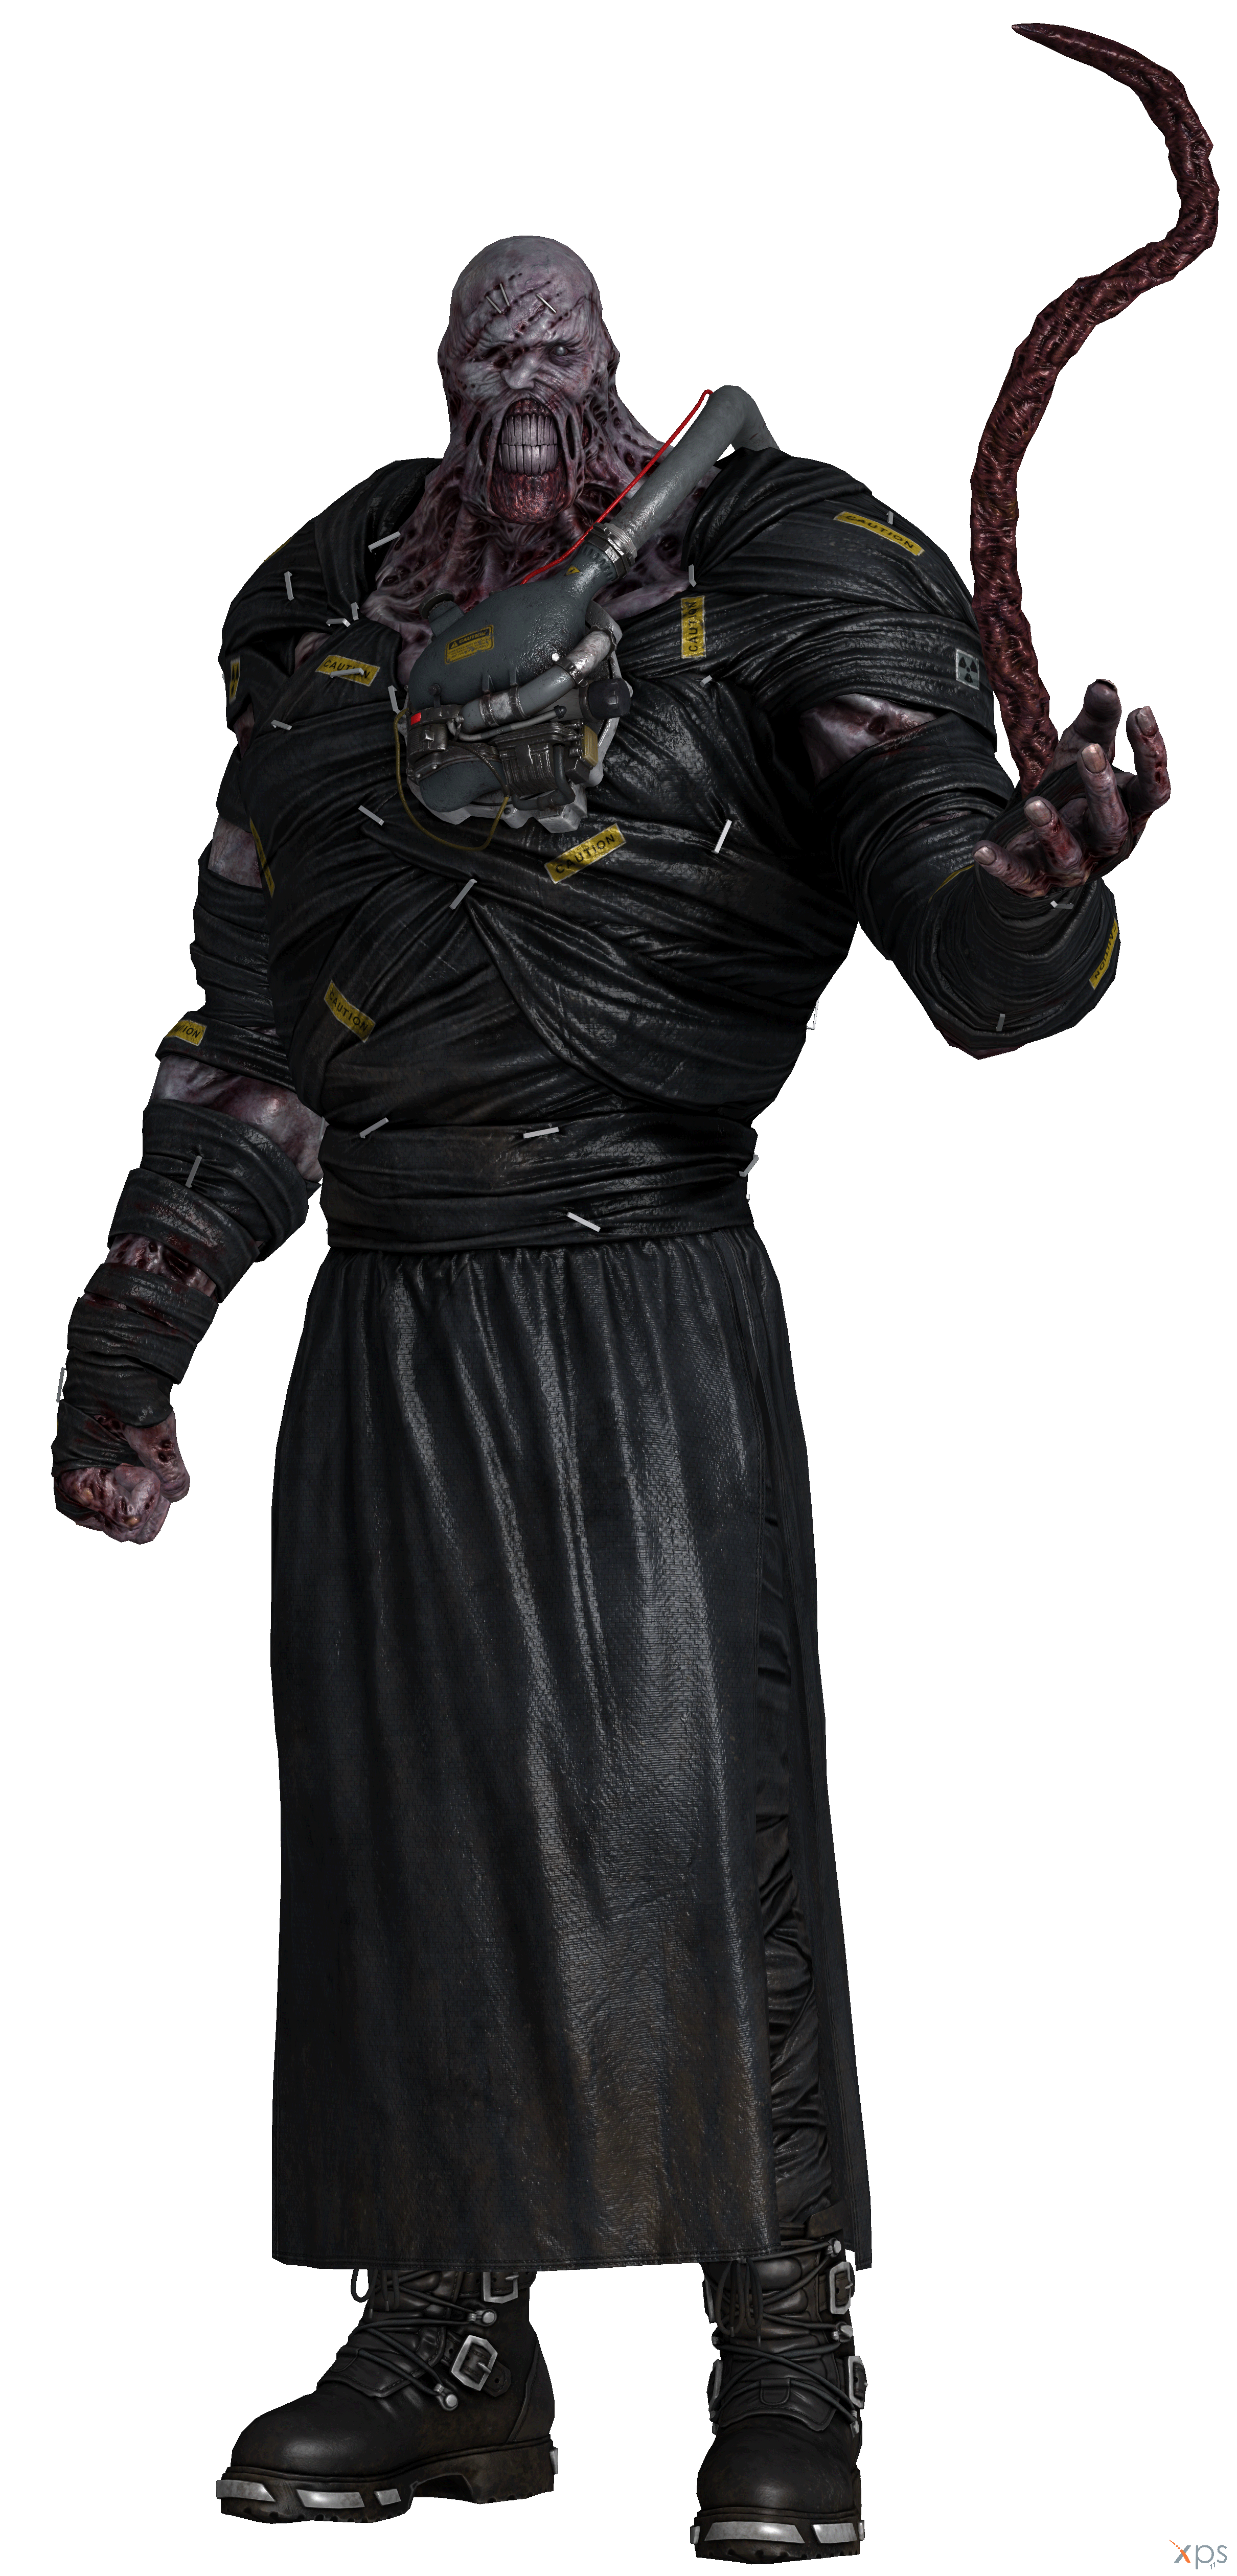 SFM] Resident evil: Mr X vs Nemesis Part-2 